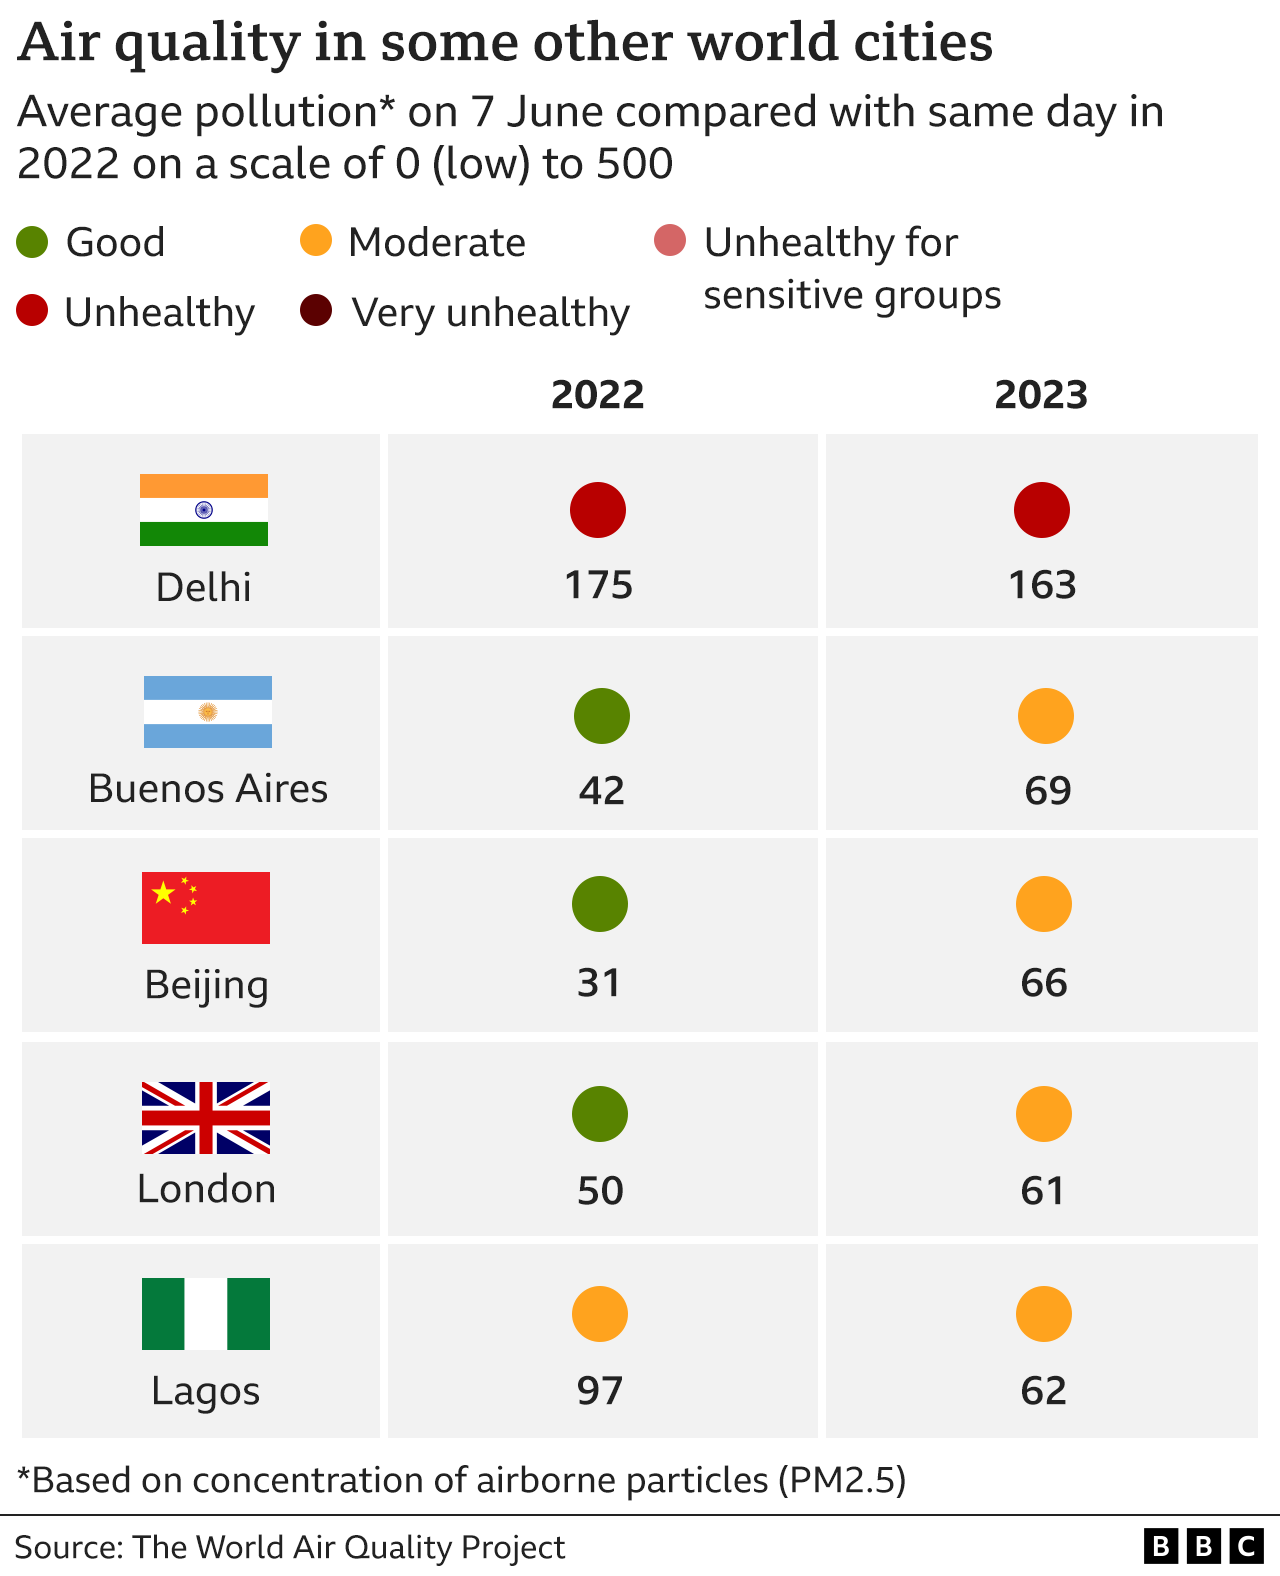 Tabla que muestra la calidad media del aire en cinco ciudades del mundo el 7 de junio de 2023 en comparación con el mismo día en 2022, con Delhi calificada como insalubre en ambos casos, Londres, Buenos Aires y Pekín pasando de buena a moderada y Lagos permaneciendo moderada